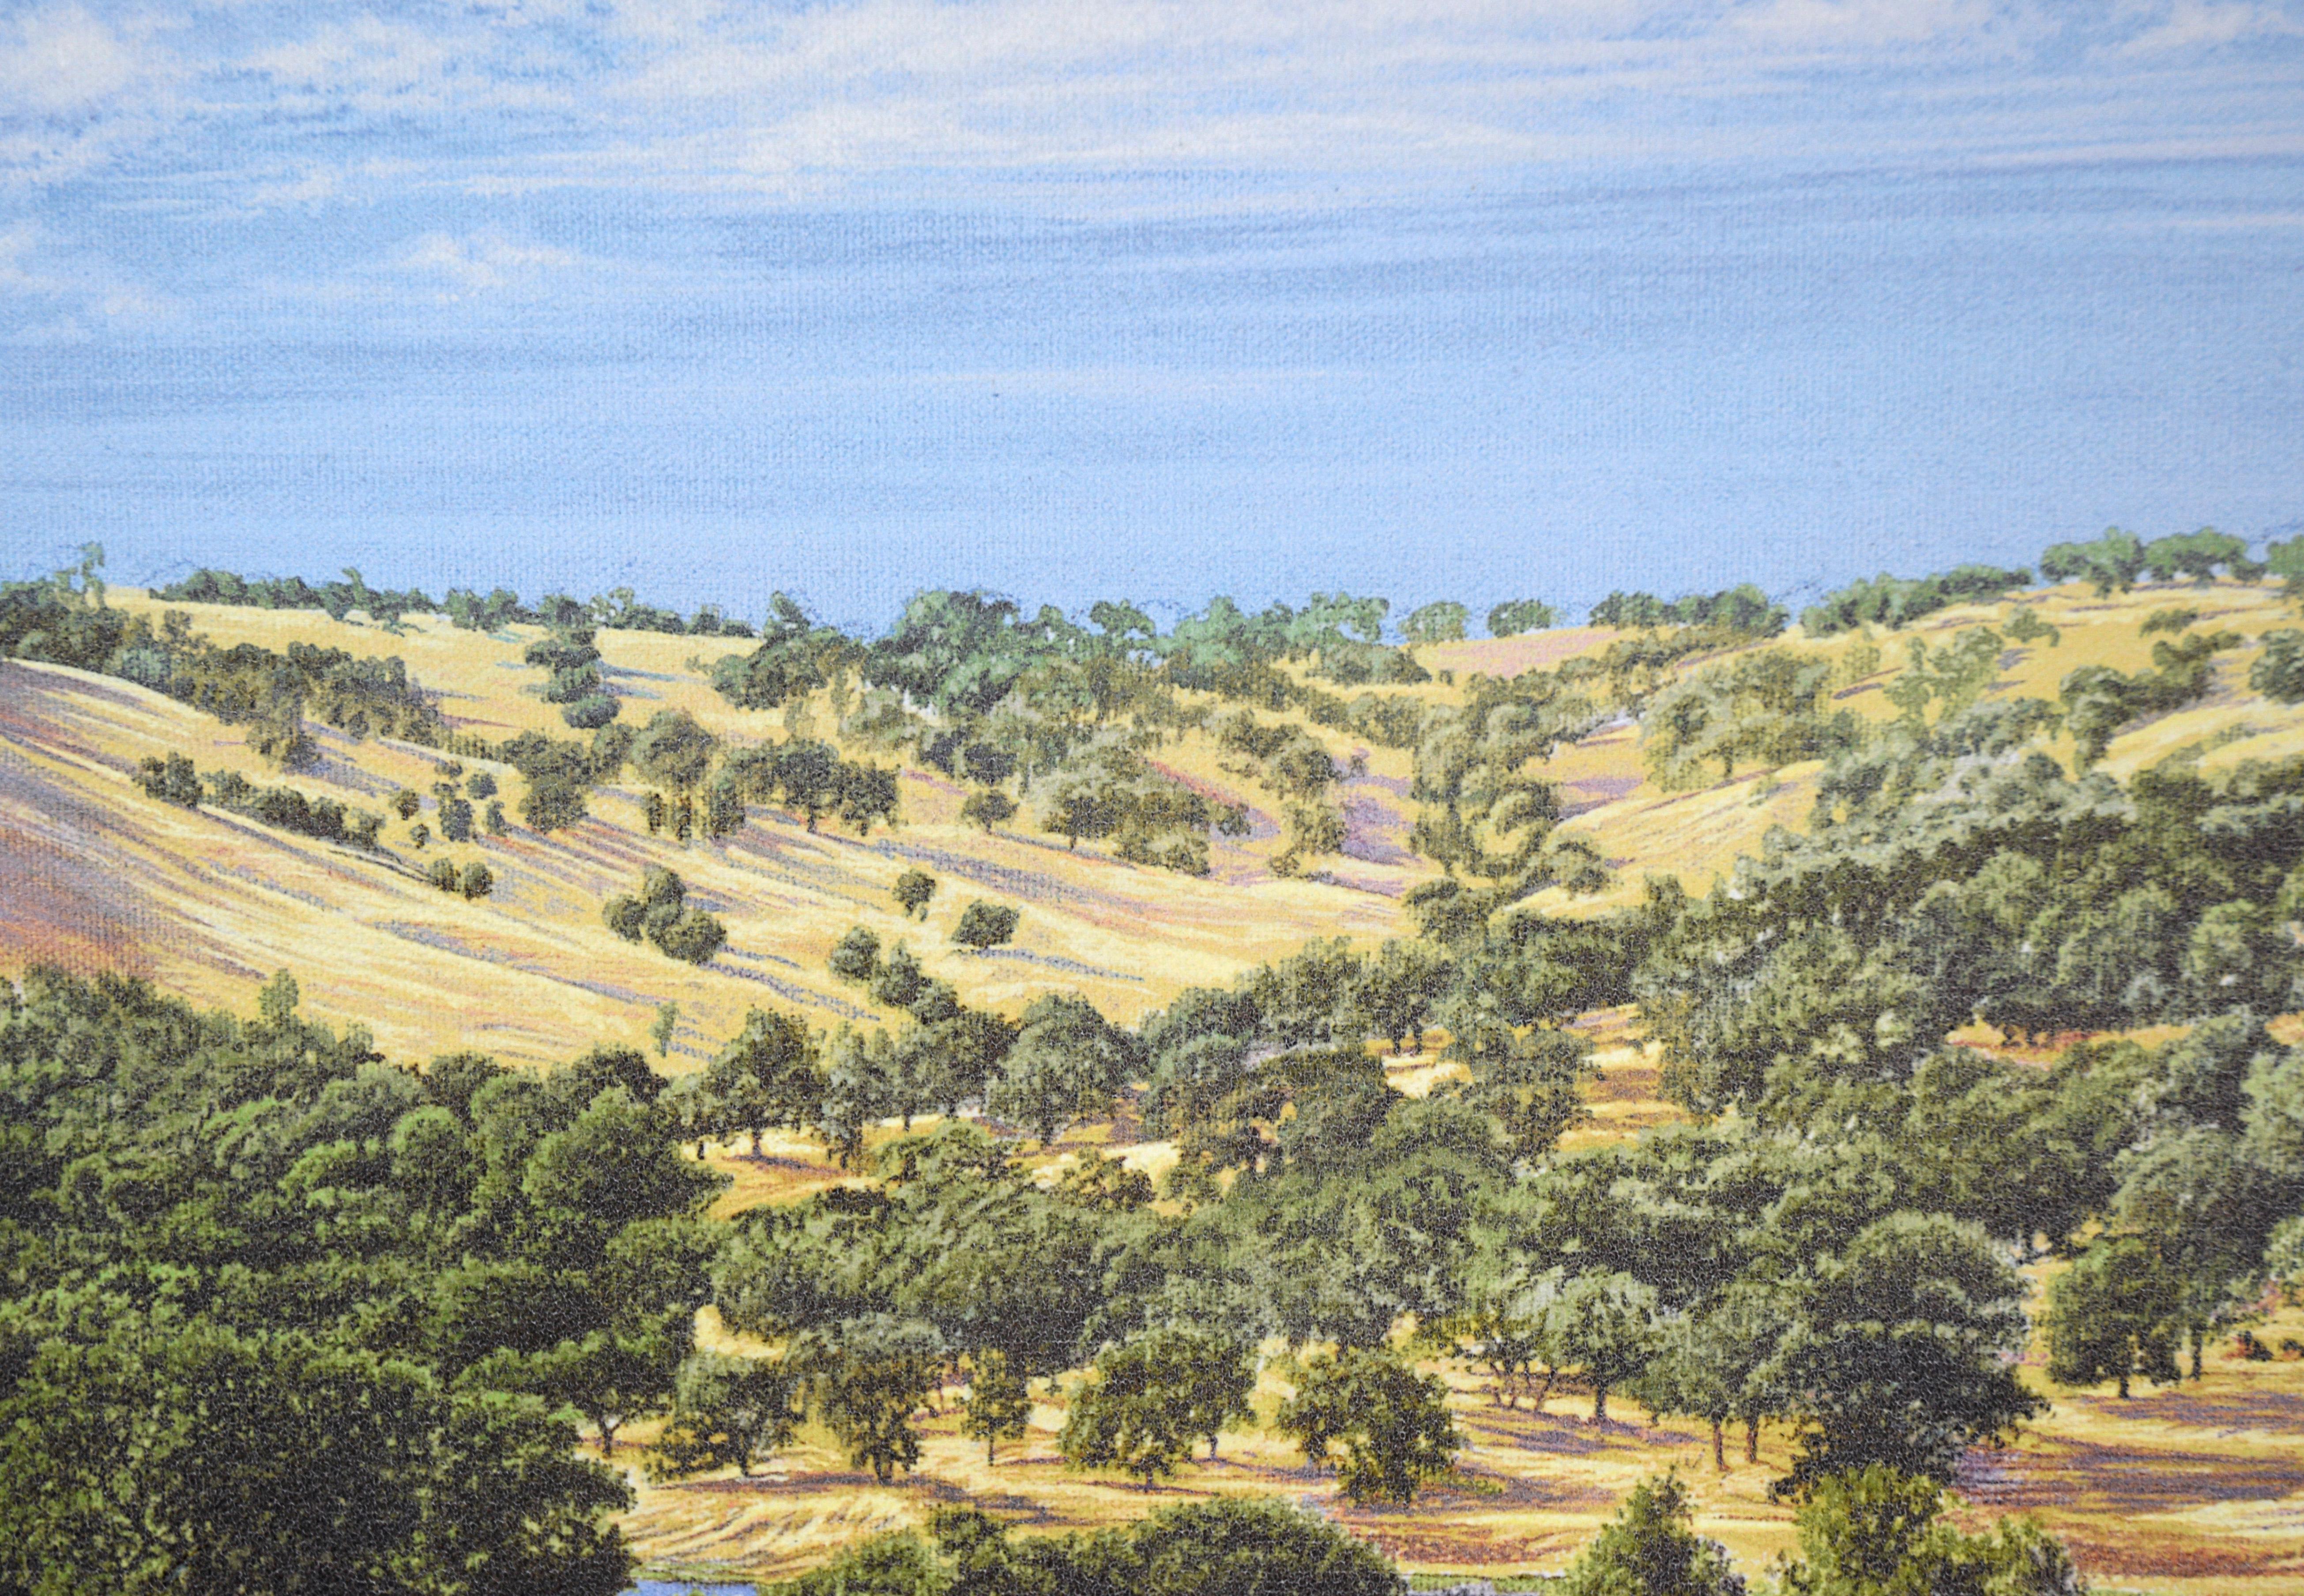 The Tenth Hole at Auburn Valley Golf Course - AP, 1/50 - Giclée sur toile

Représentation sereine du terrain de golf Auburn Valley et des collines environnantes par Jim Fitzpatrick (américain, né en 1947). Le spectateur se trouve face au drapeau du